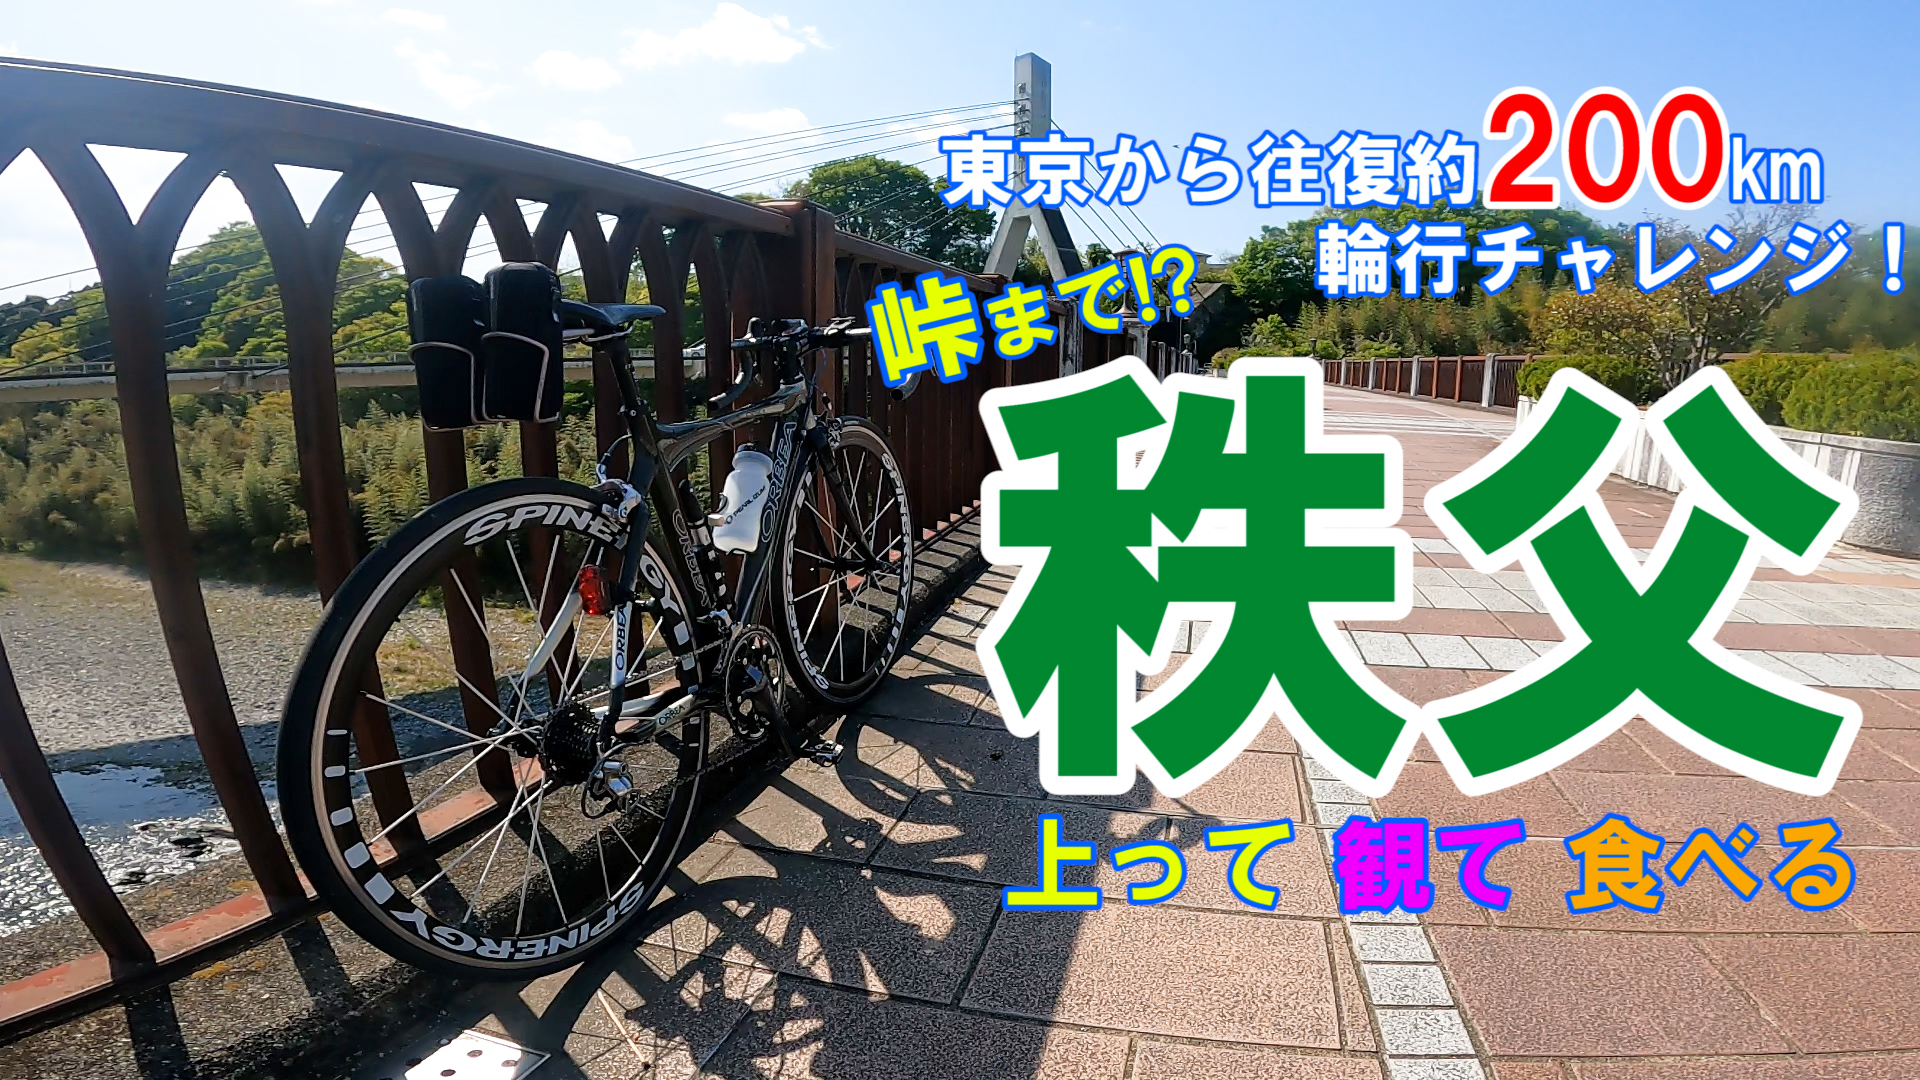 【自転車】東京から秩父往復約200kmのロードバイク自転車旅